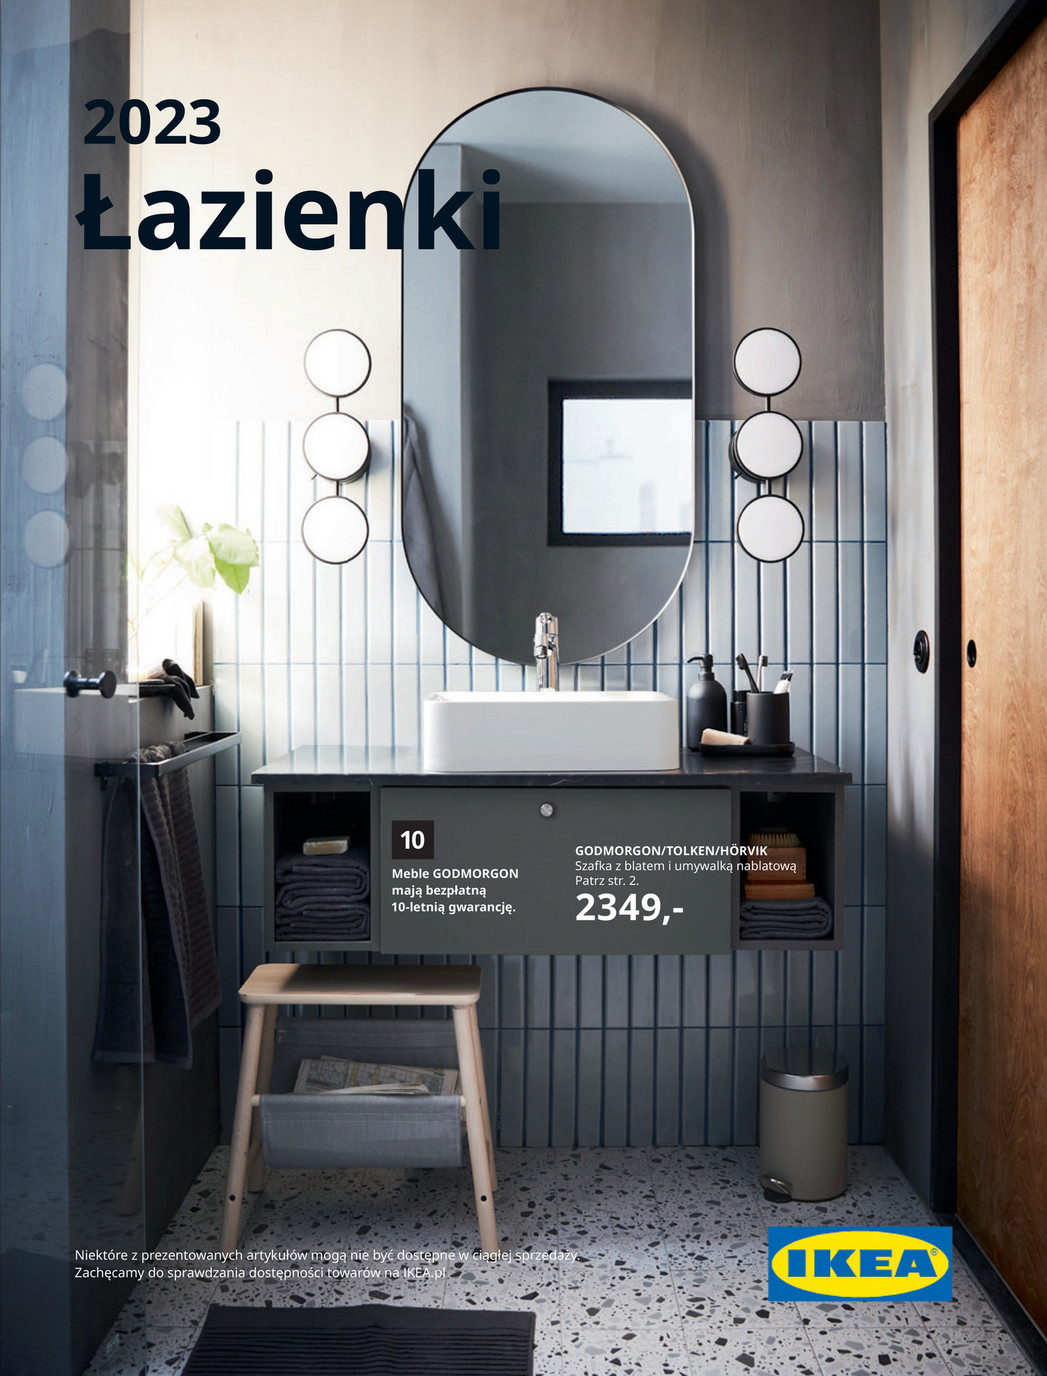 Łazienki 2023 - Ikea Gazetka promocyjna - W tym tygodniu - oferta 01/02/2023 - 01/03/2023